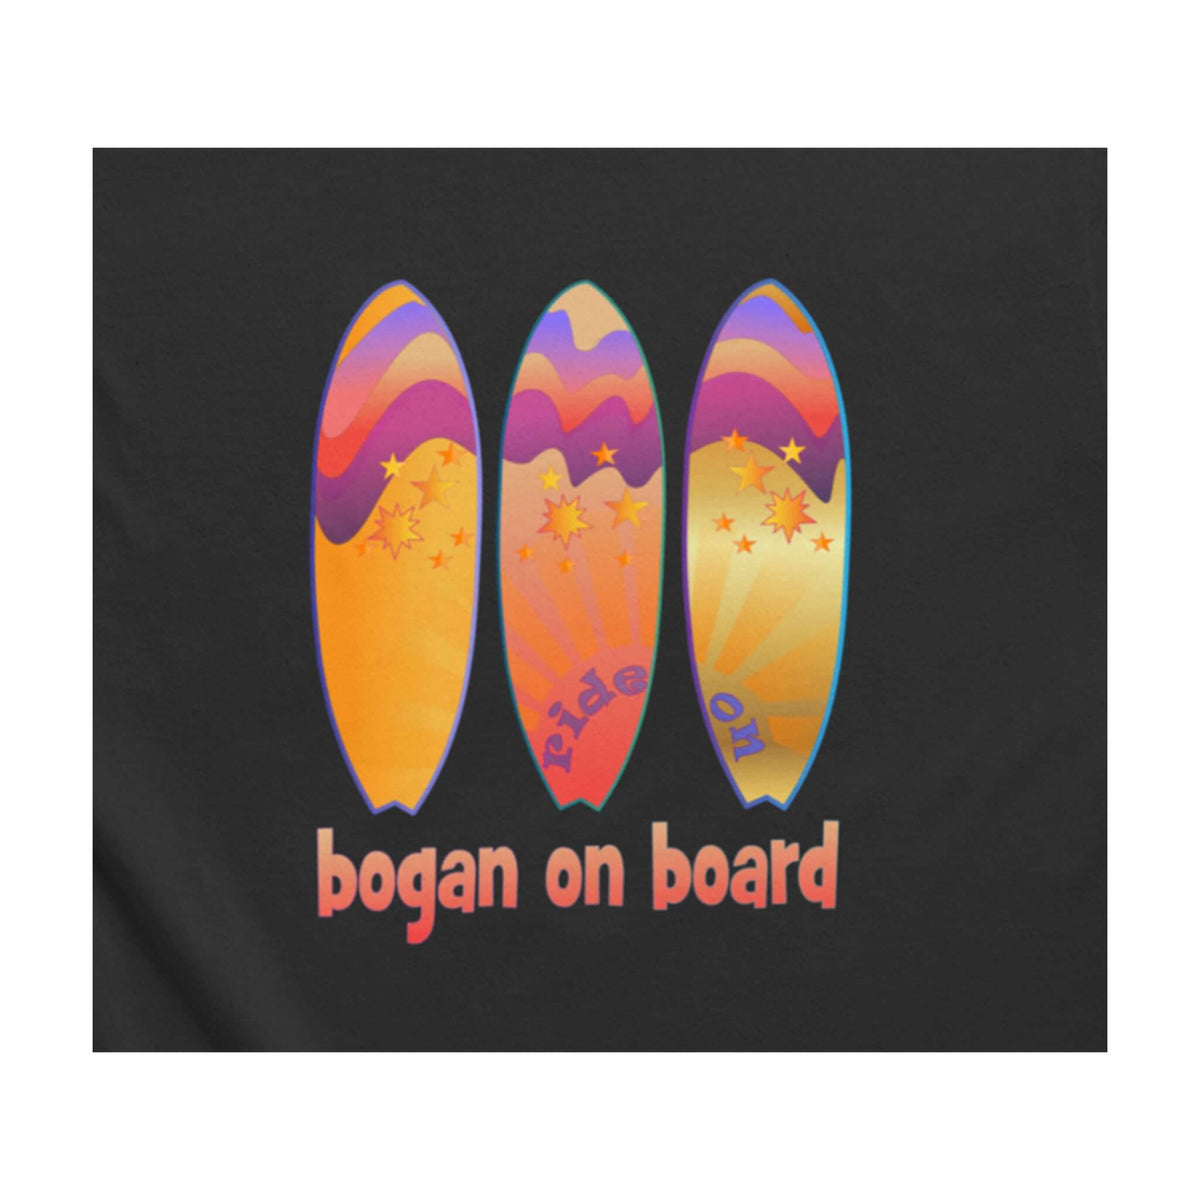 Aussie surf design. Bogan on Board with three surfboards